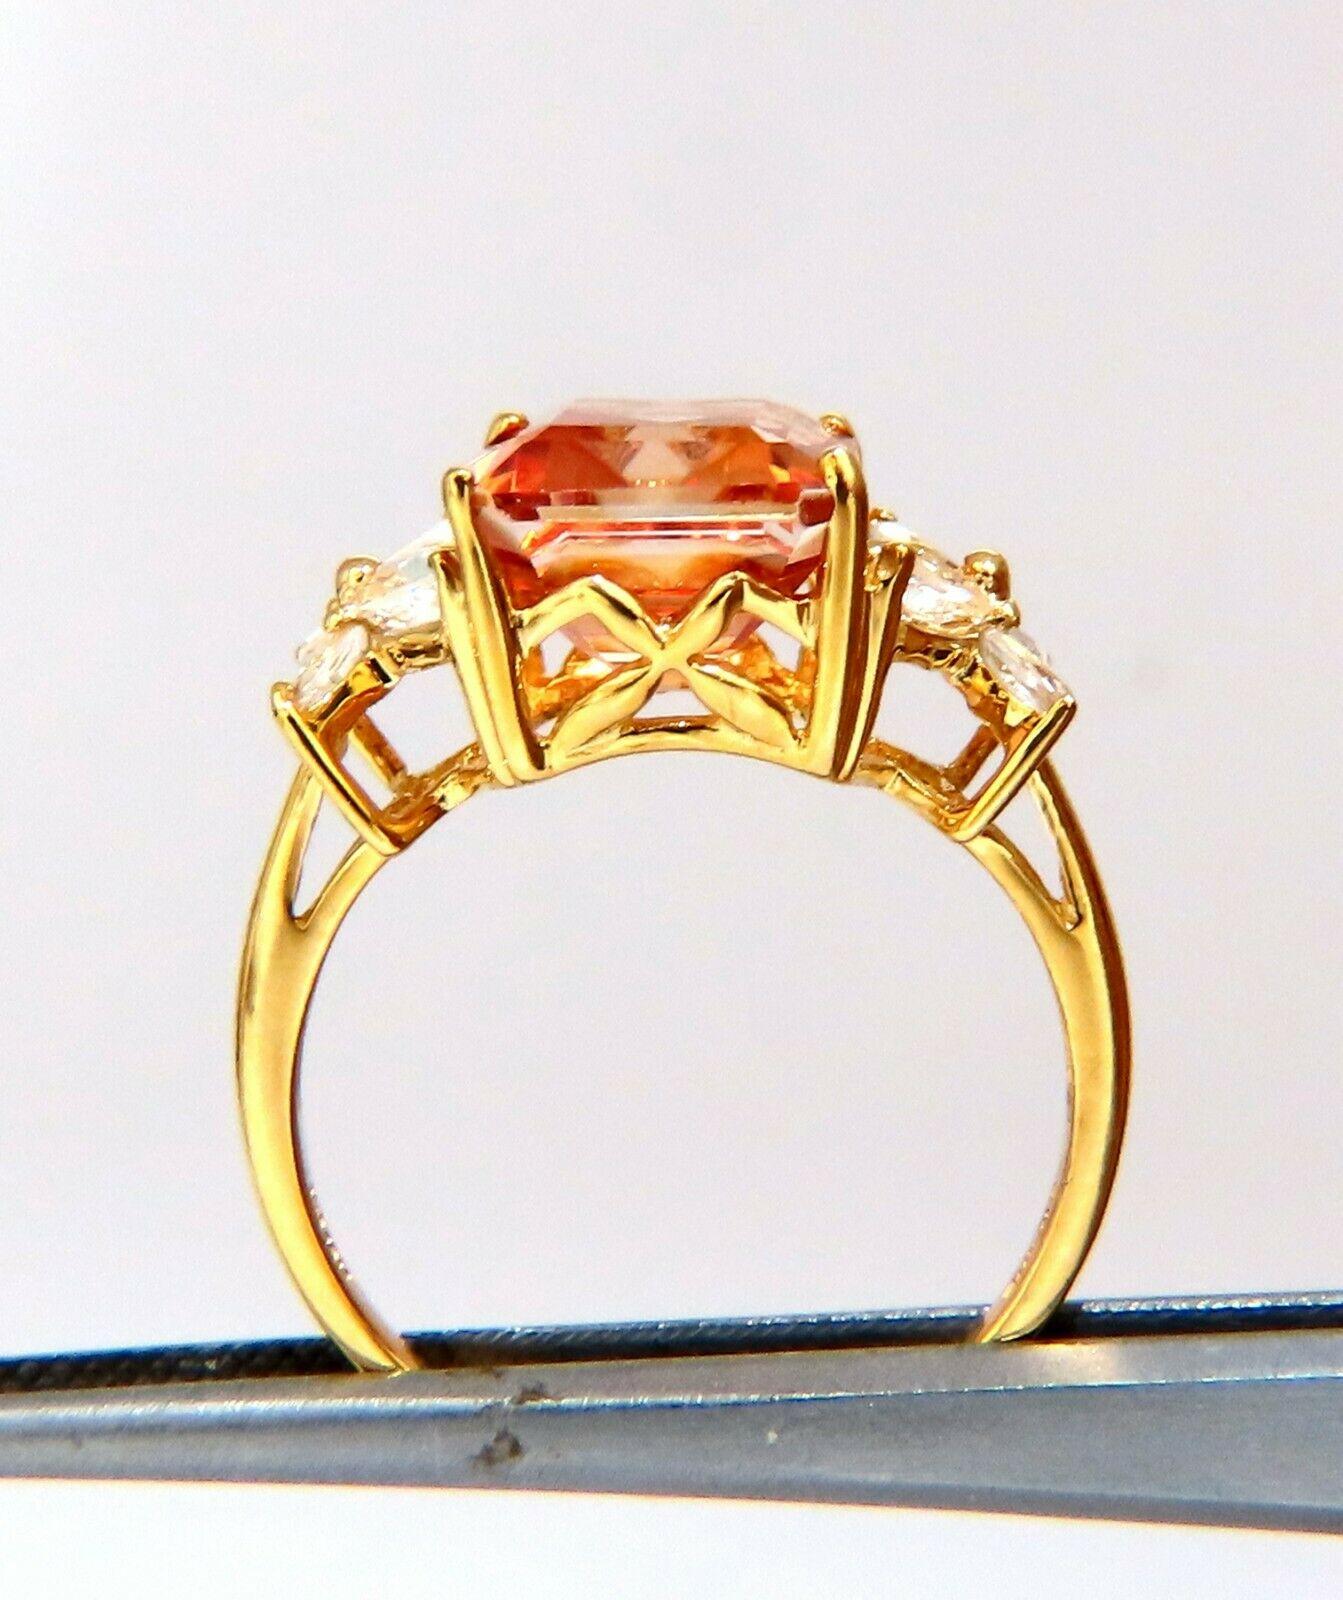 Cubic Zirconia Diamant Ring.

14x10 cz, ausgefallene Farbe orange.

Natürliche seitliche Marquise-Diamanten, .50ct.

10kt Gelbgold. 5.4 Gramm

tiefe des Rings 8,3 mm

Größe 10 und wir können die Größe ändern.